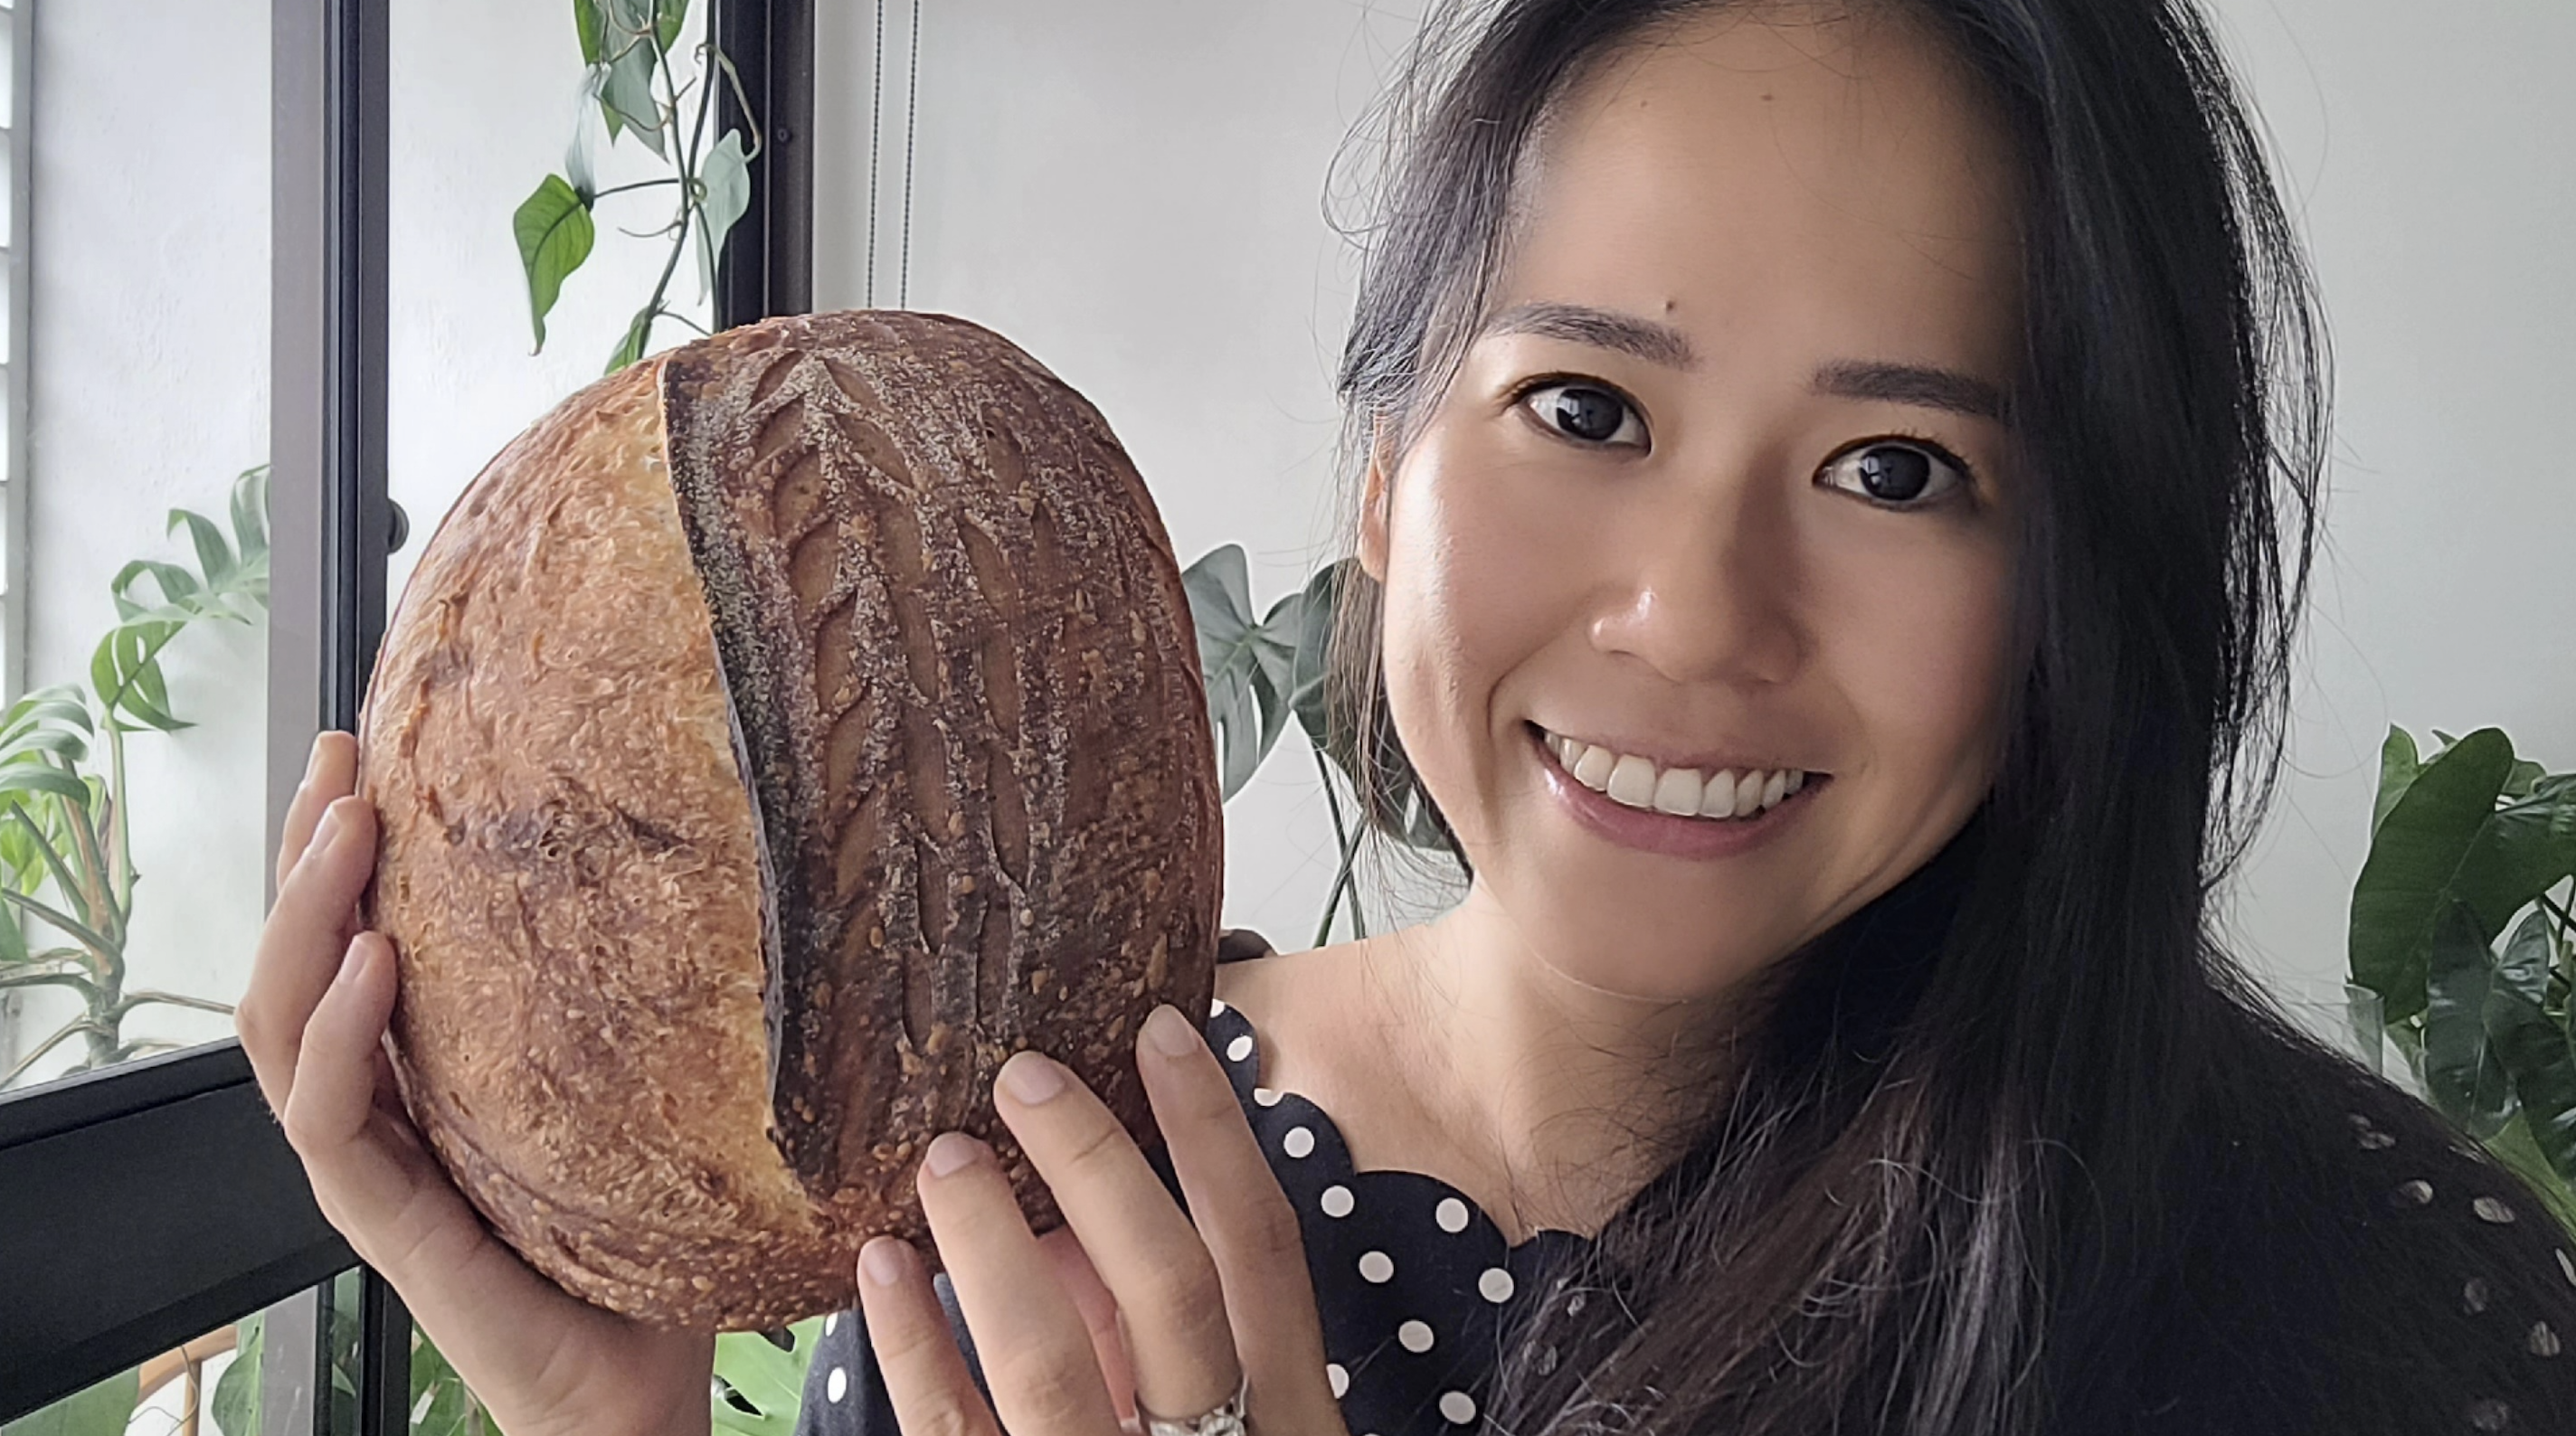 sourdough bread instagram social media influencer home baker content creator elvira @elleciously from singapore asia 2